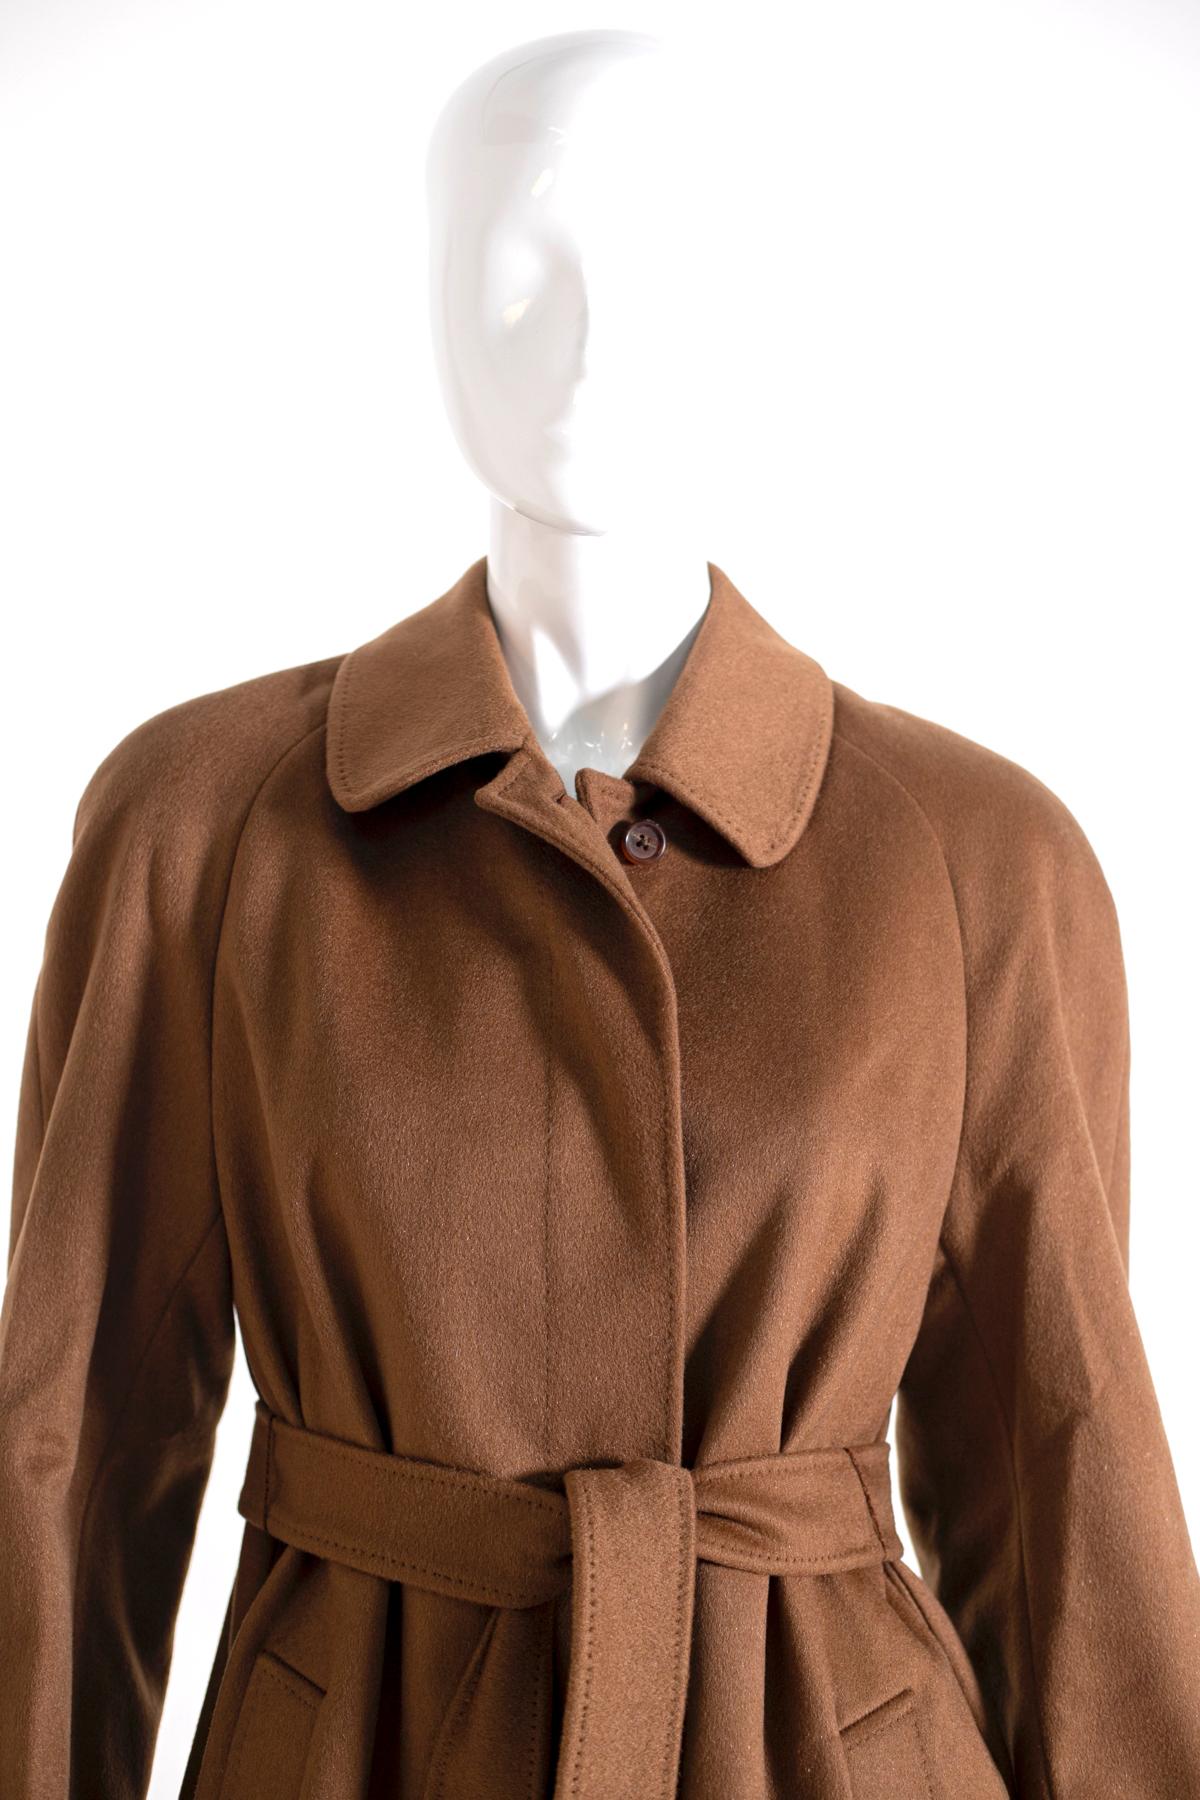 Manteau Aquascutum pour femme des années 90, couleur marron, fait de 100% pur Cachemire. 
Ligne classique, avec cinq boutons sur le devant et deux poches confortables, longueur cheville avec ceinture assortie réglable. L'intérieur est doublé en 100%